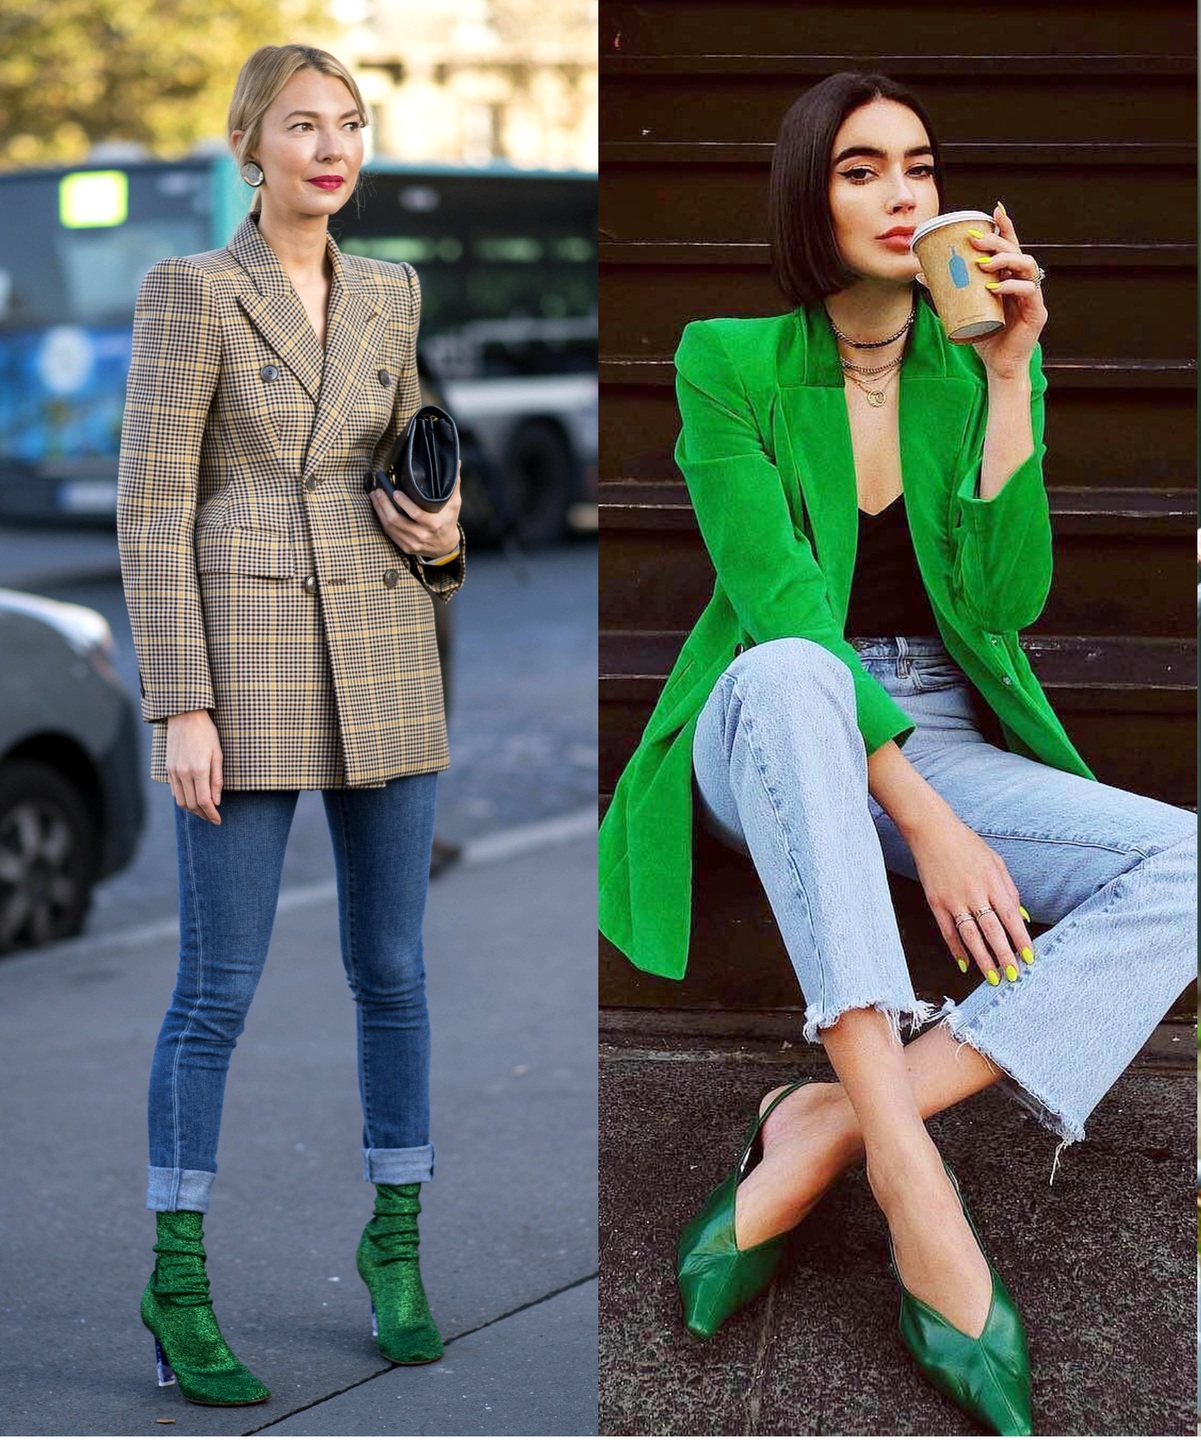 combinación de colores en ropa y zapatos de mujer 